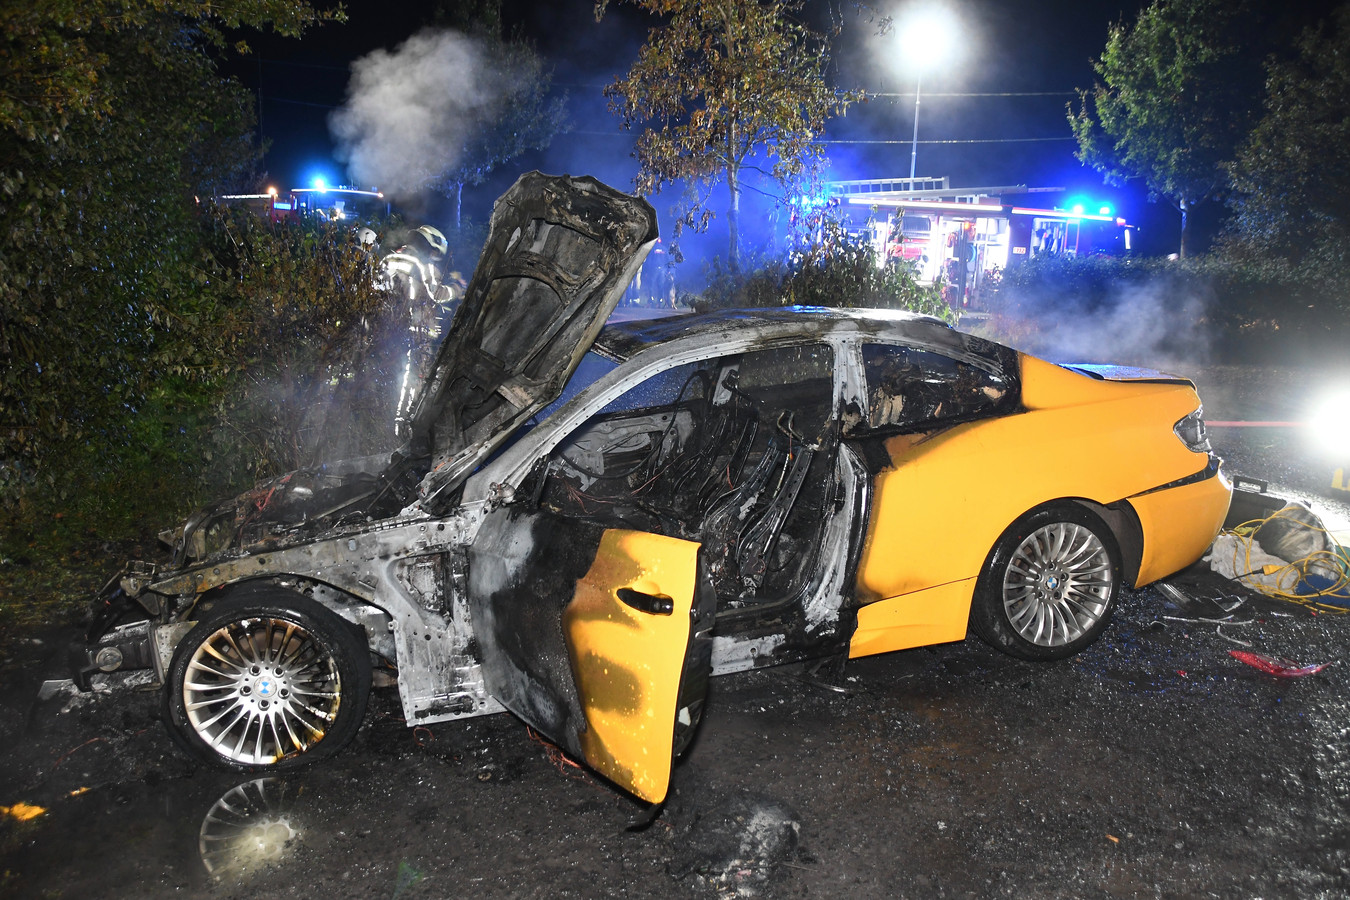 De fraaie BMW ging helemaal verloren bij de brand op de parking aan de rand van het Vierkavenbos in Moorslede.